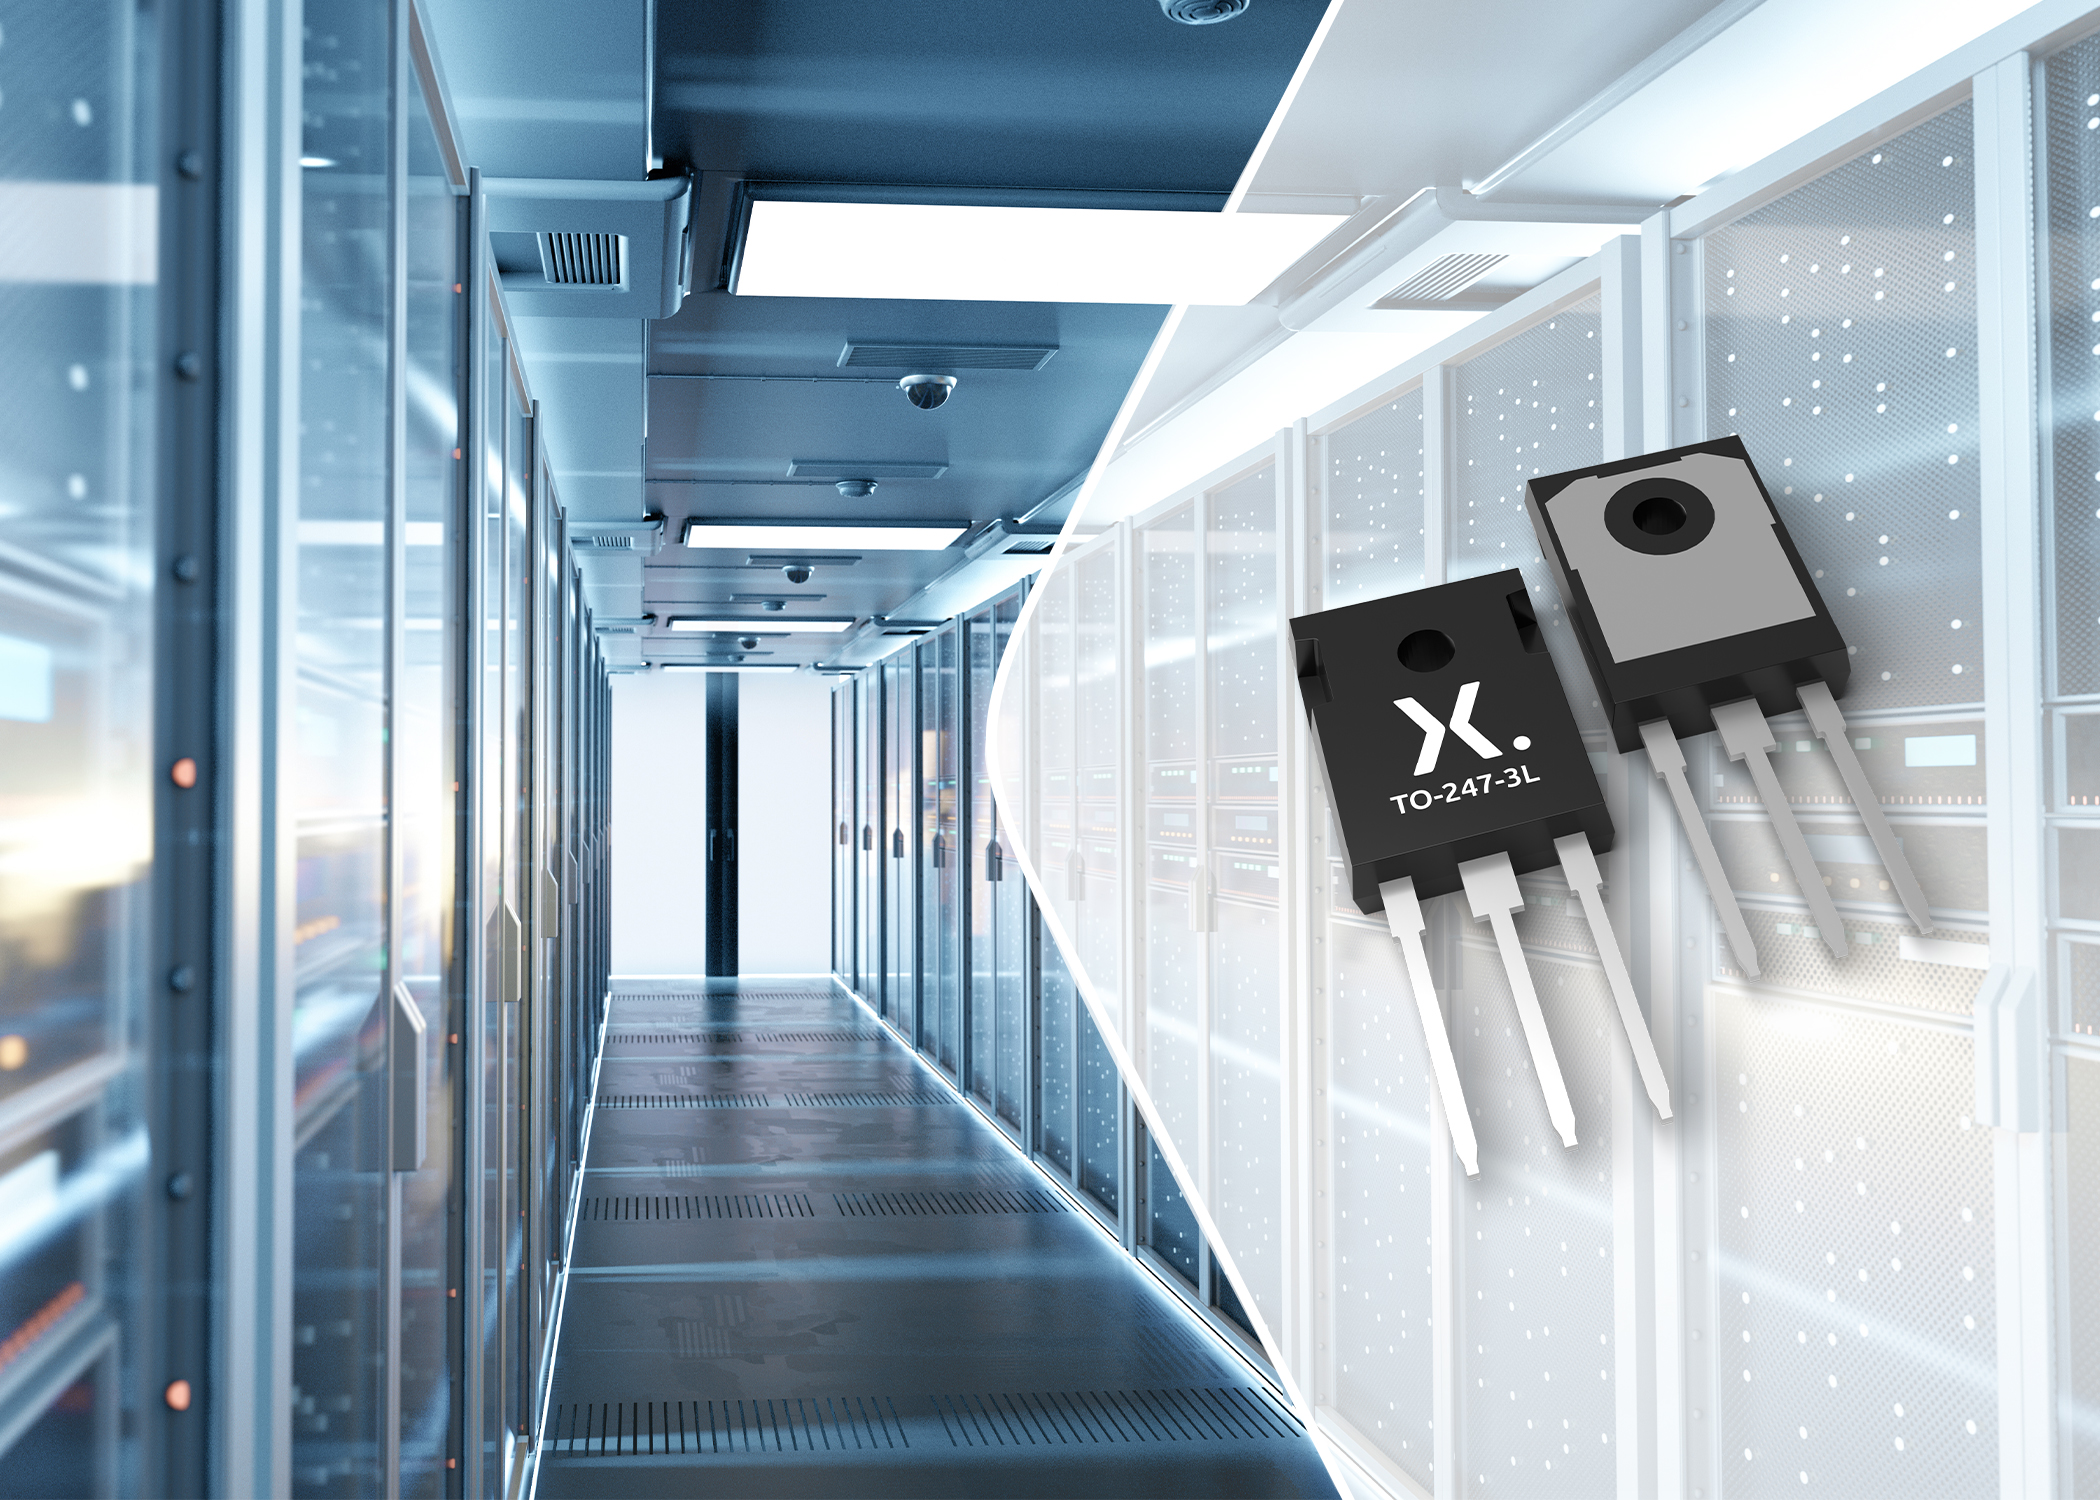 Nexperia launches new 600 V discrete IGBTs